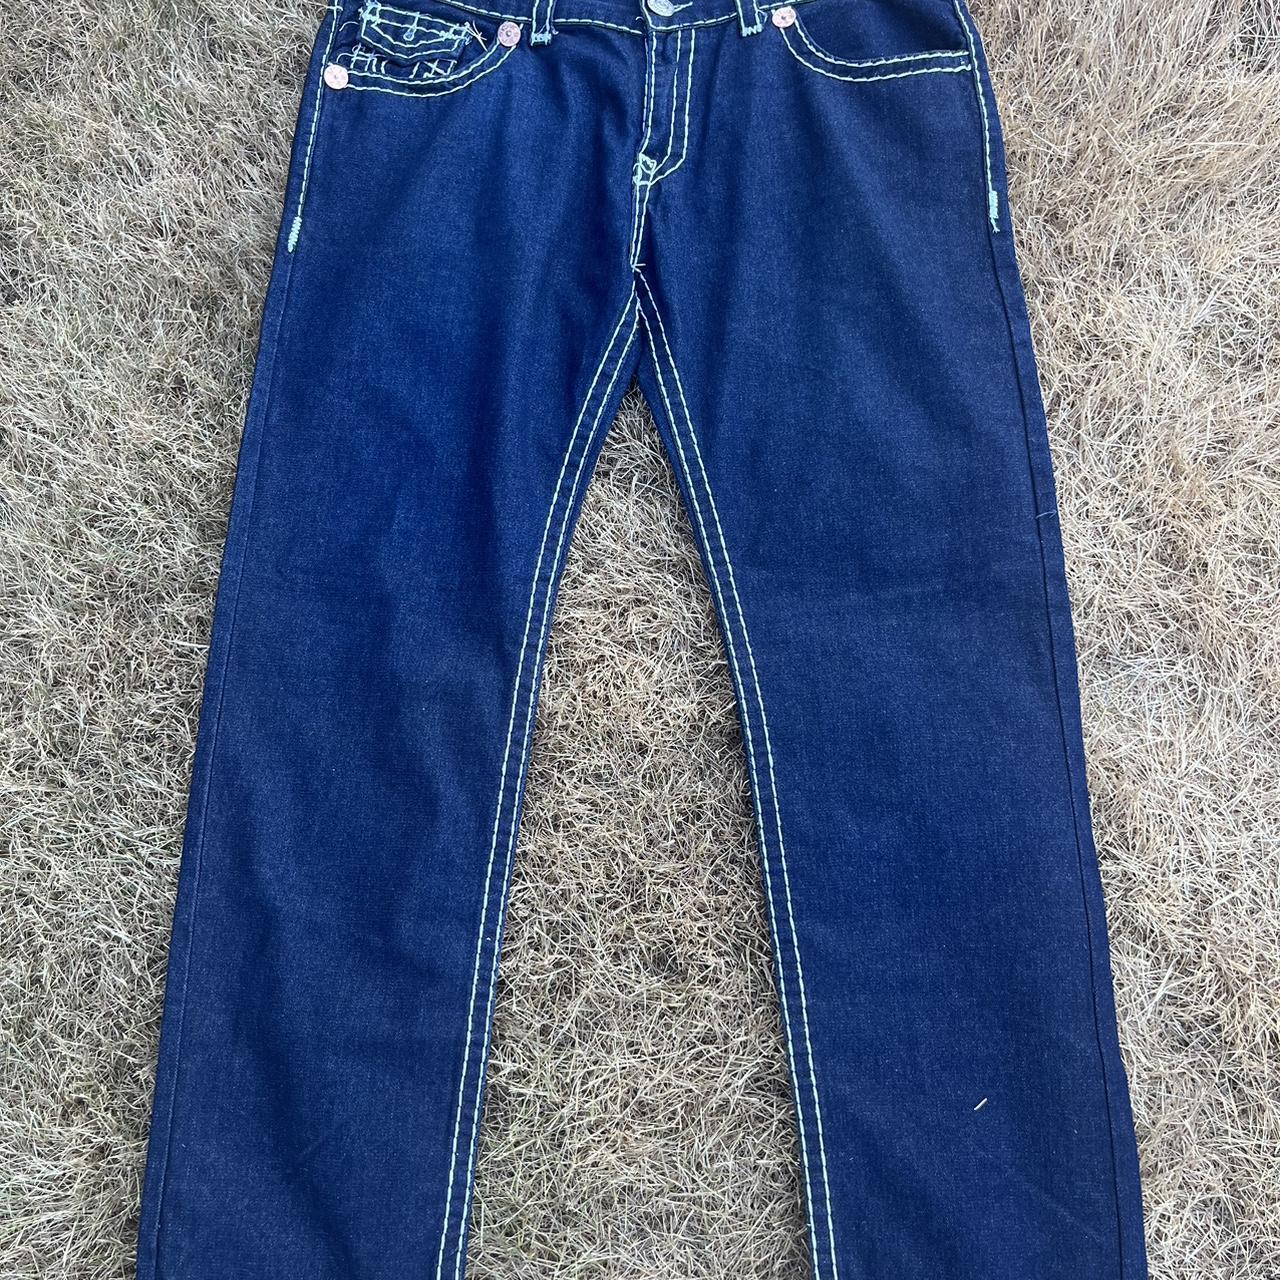 Dark wash 40x34 True religion jeans - Depop